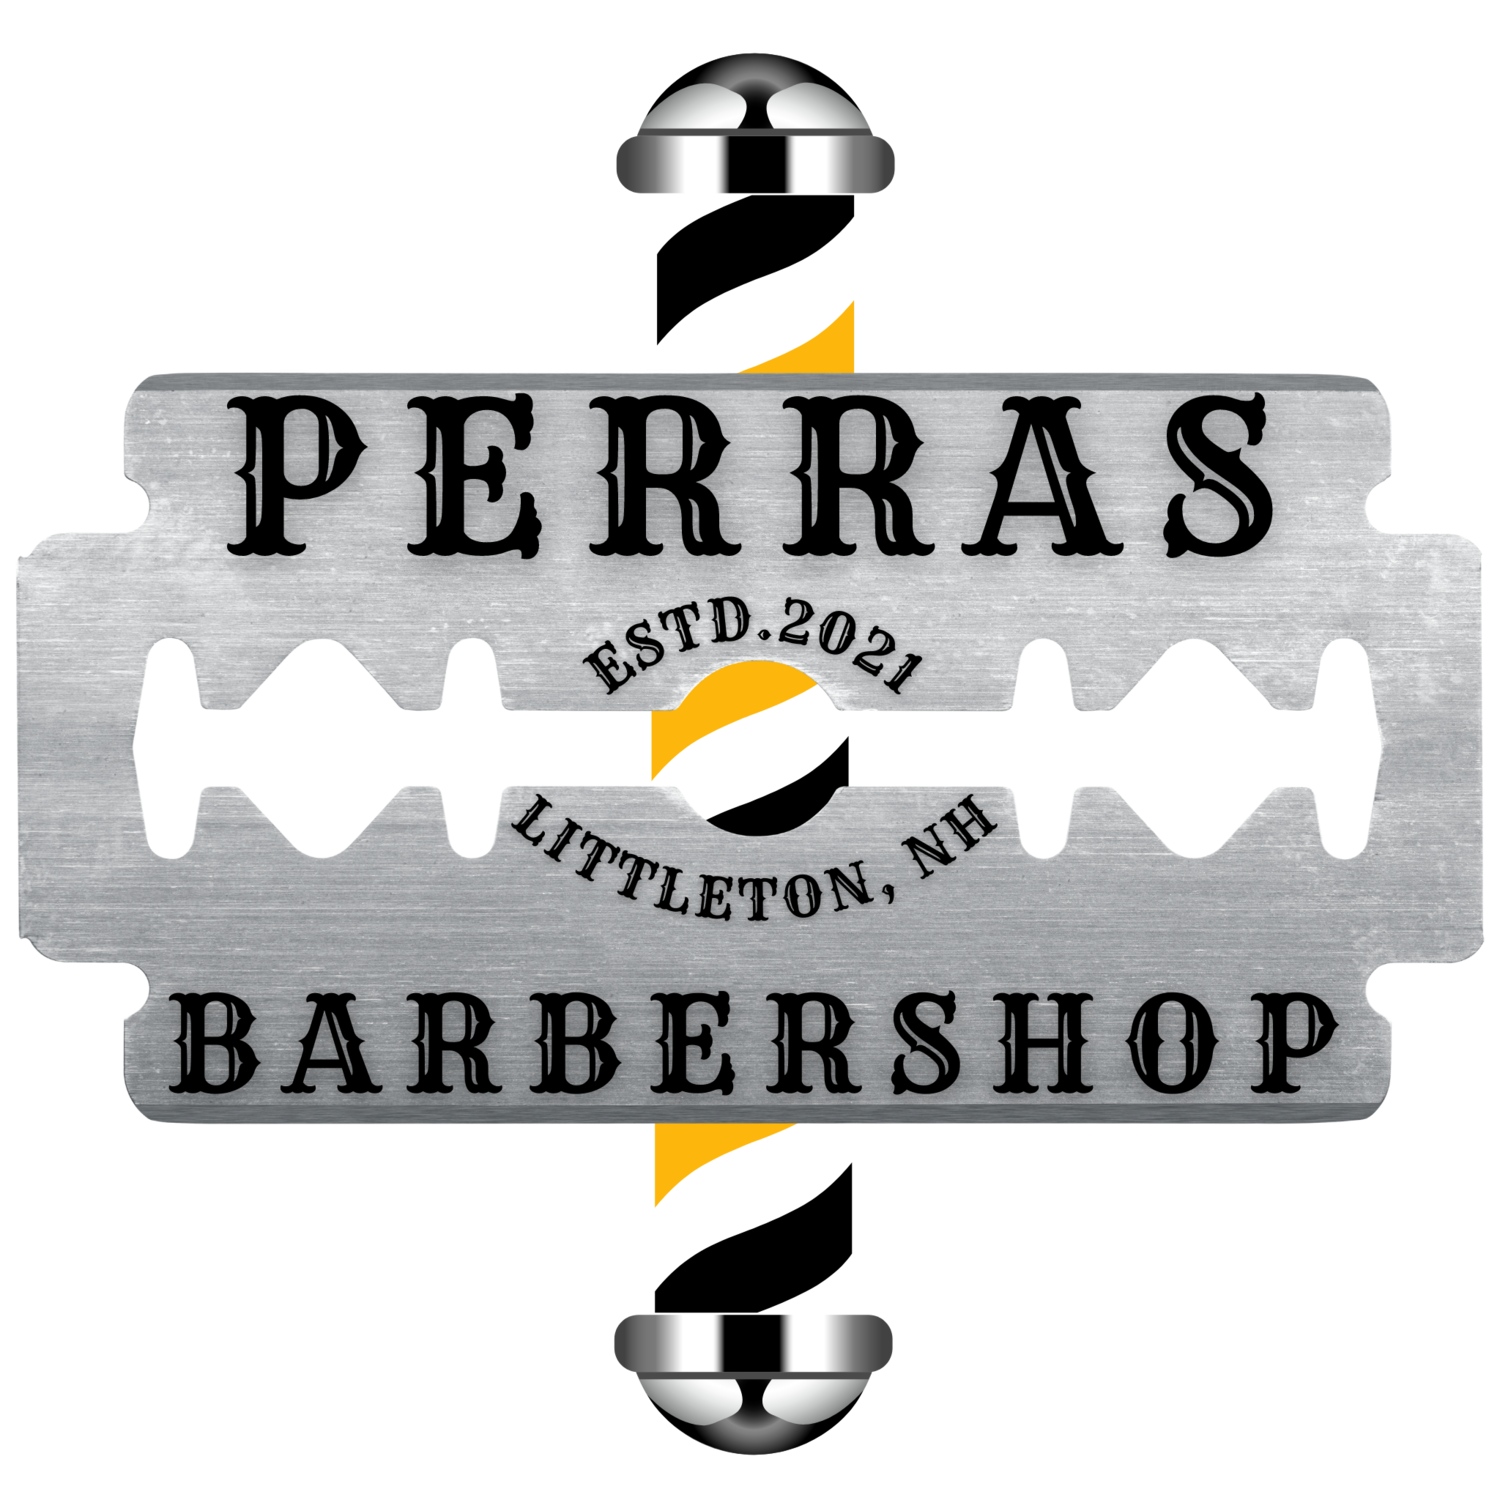 Perras Barbershop